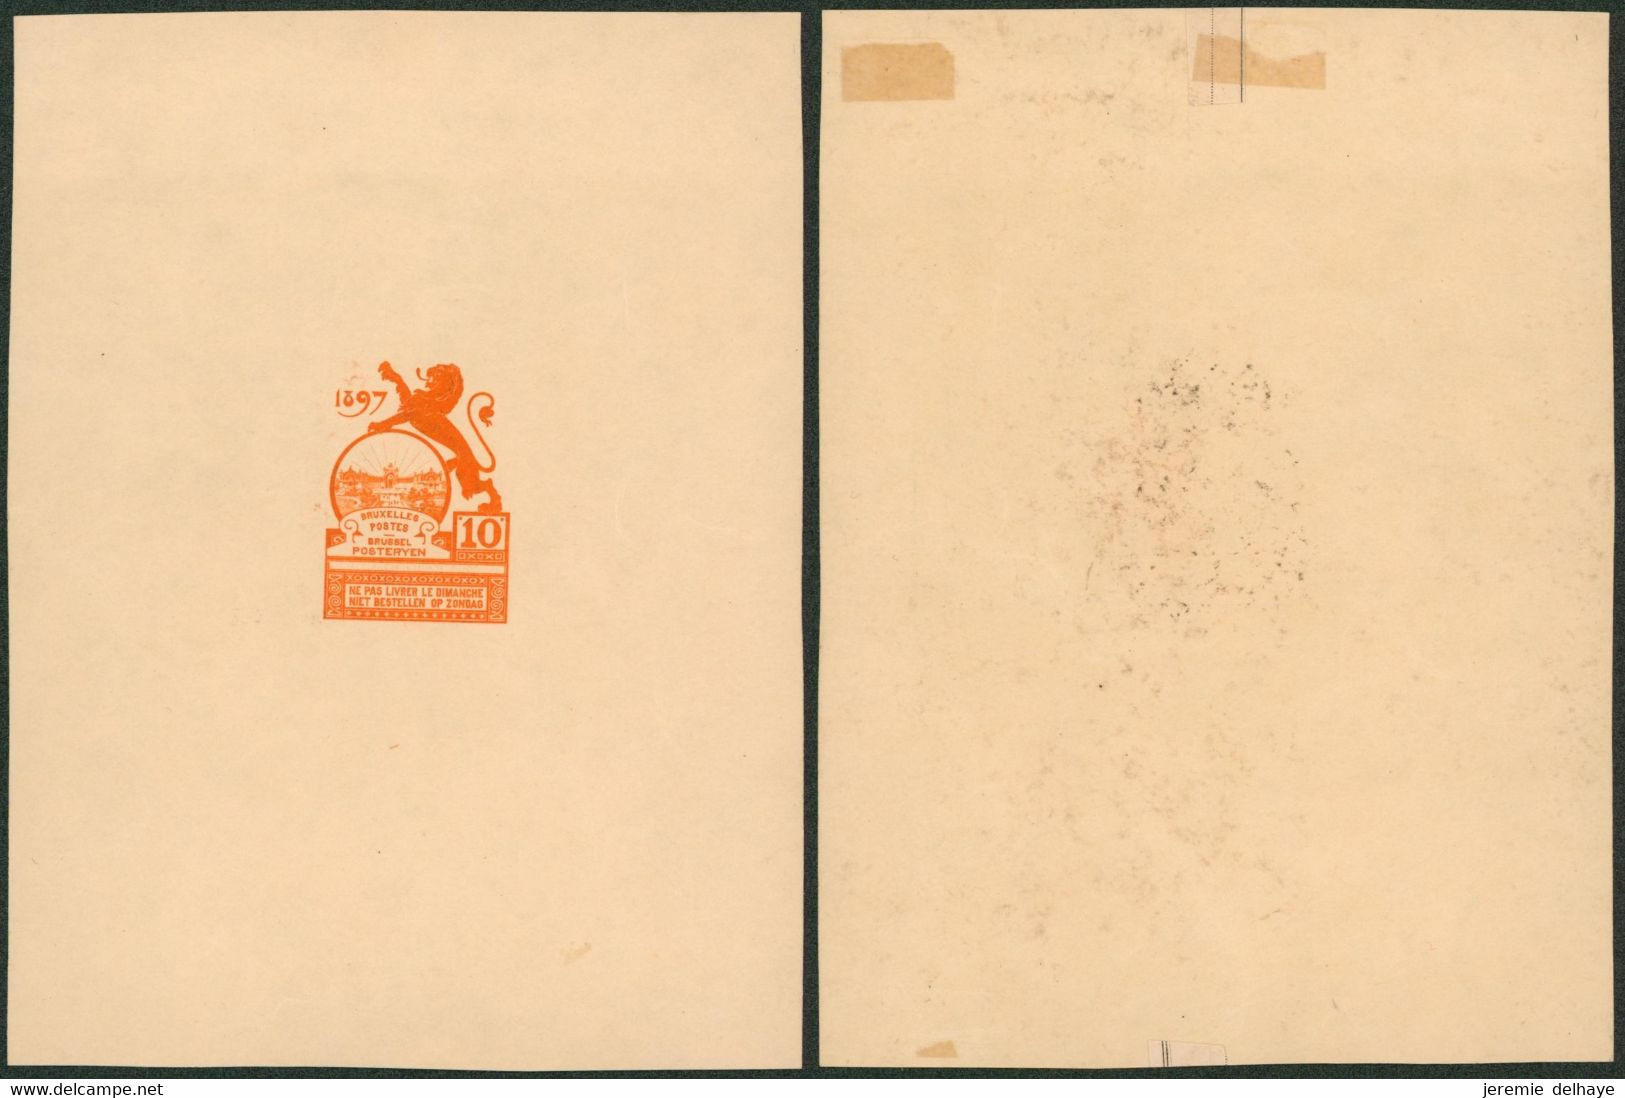 Essai - Proposition Du Peintre Louis Titz (Bruxelles Expositions 1897) Sur Papier Carton Crème (1 Couleur) : STES 2220 - Ensayos & Reimpresiones